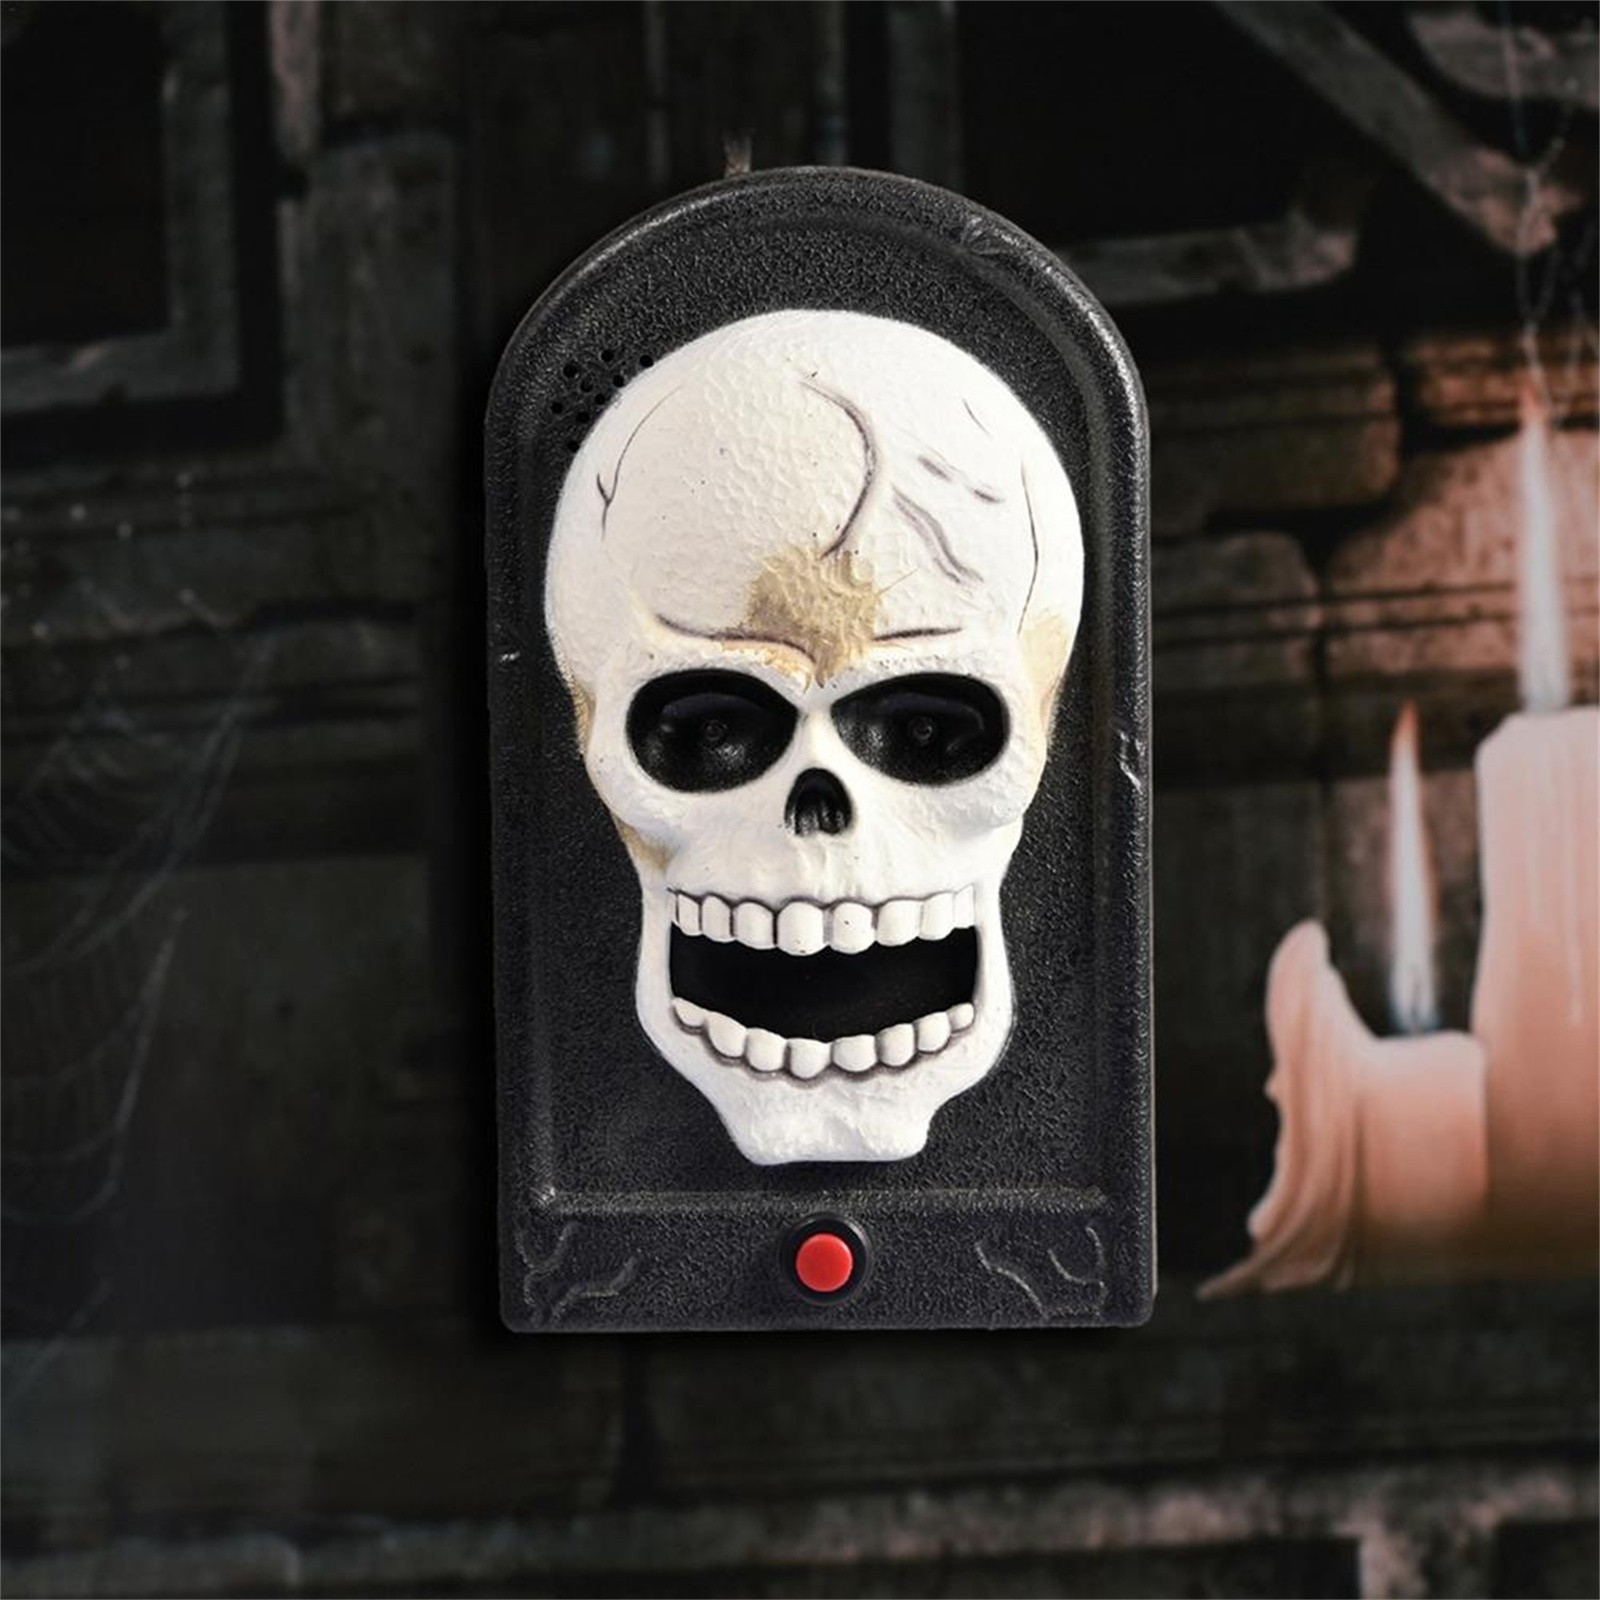 Halloween-Doorbell-Glowing-Sounding-Horror-Toy-Welcome-Door-Hanging-Skull-Decora-Horror-Props-Glowin-1907298-4